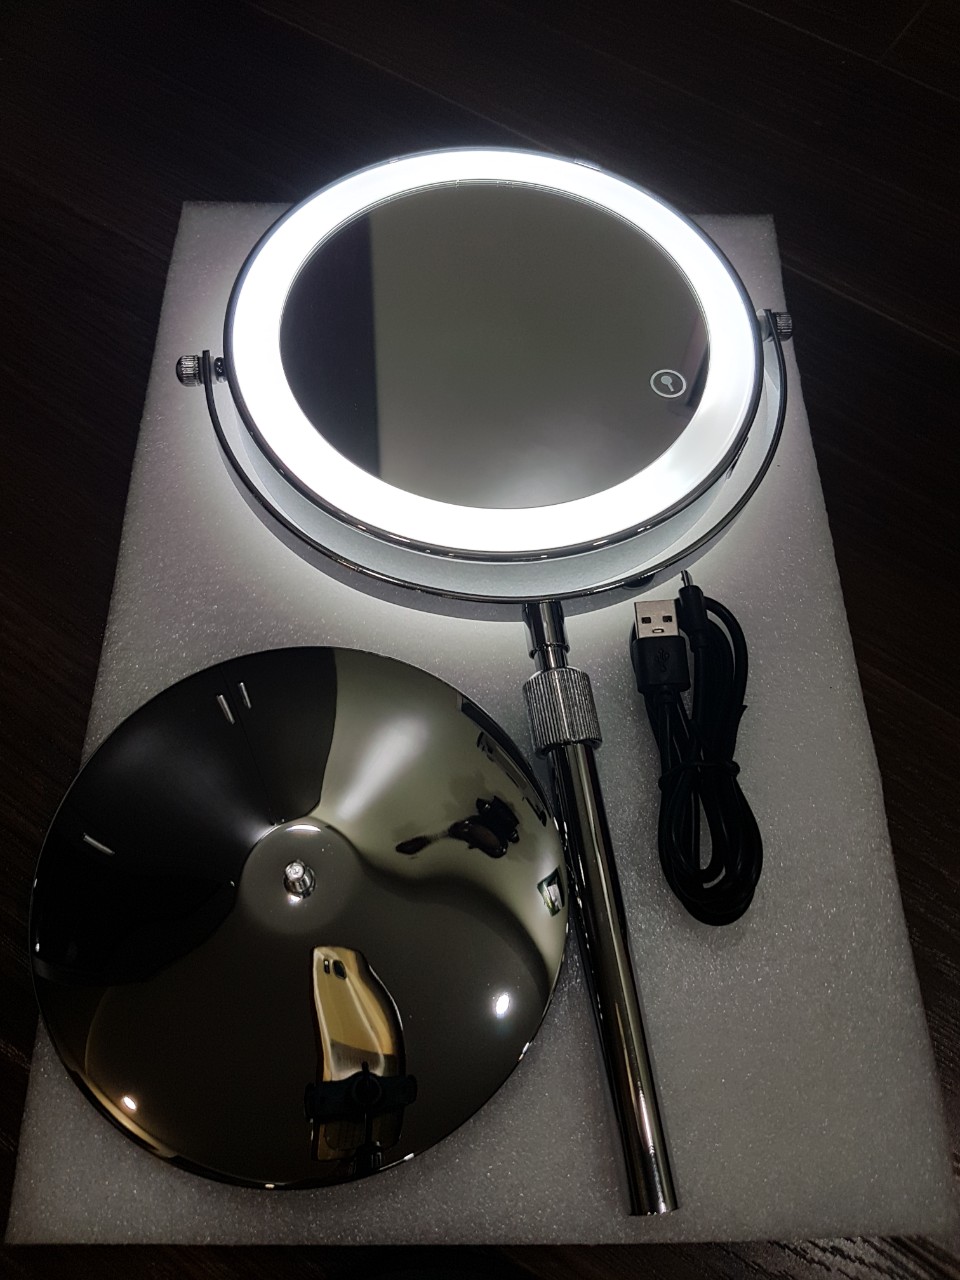 Gương để bàn trang điểm có đèn led cỡ lớn - gương di động có 2 mặt xoay 360 độ và 1 mặt phóng to, khung inox/đồng chắc chắn, sang trọng - phụ kiện trang điểm không thể thiếu của mọi nhà